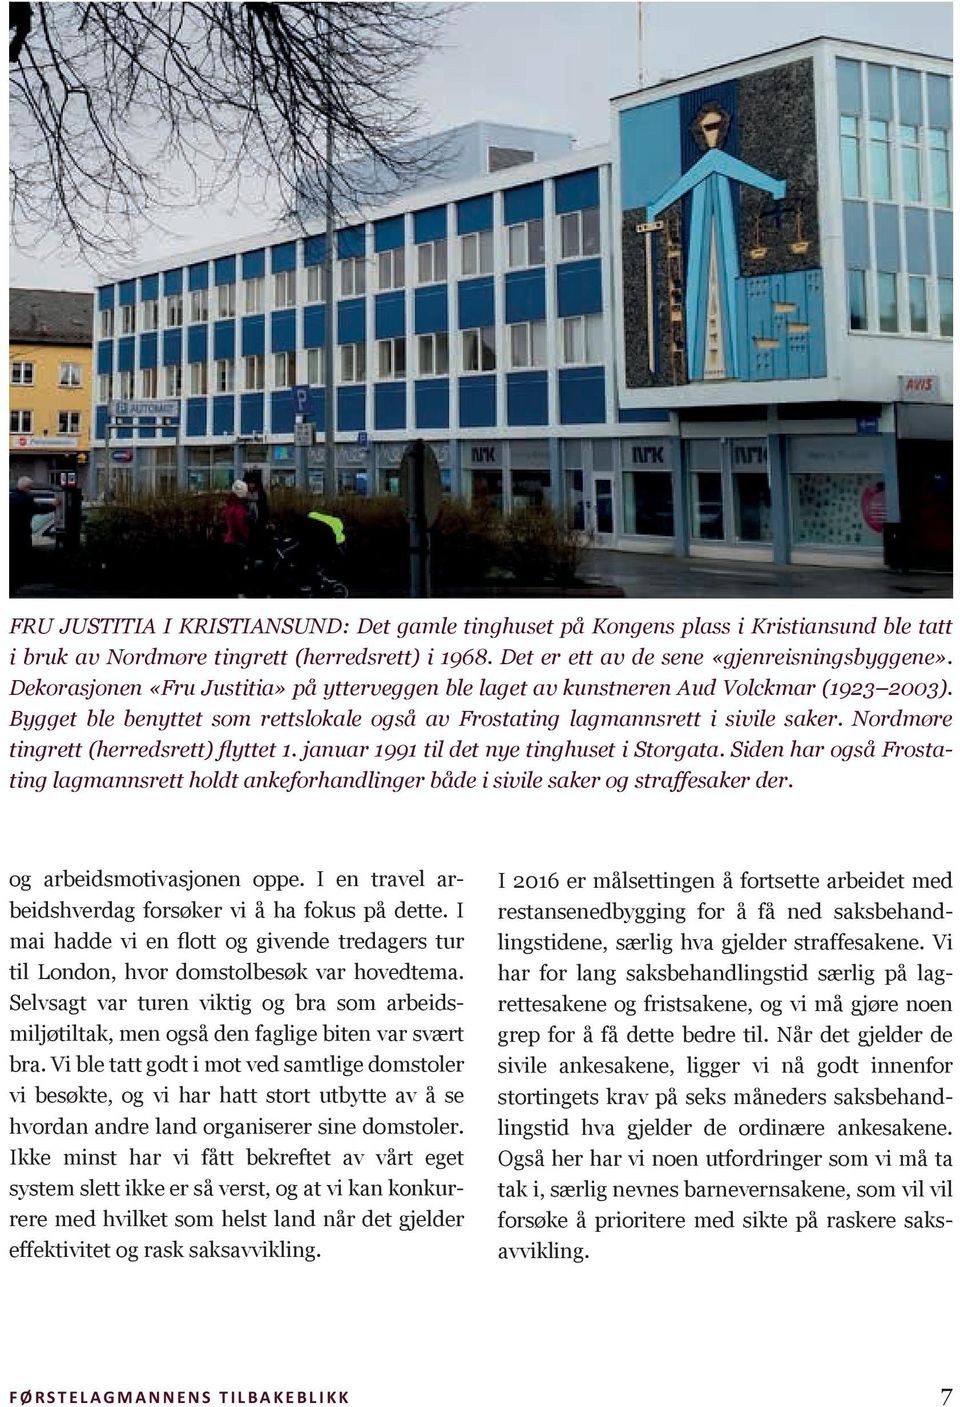 Nordmøre tingrett (herredsrett) flyttet 1. januar 1991 til det nye tinghuset i Storgata. Siden har også Frostating lagmannsrett holdt ankeforhandlinger både i sivile saker og straffesaker der.